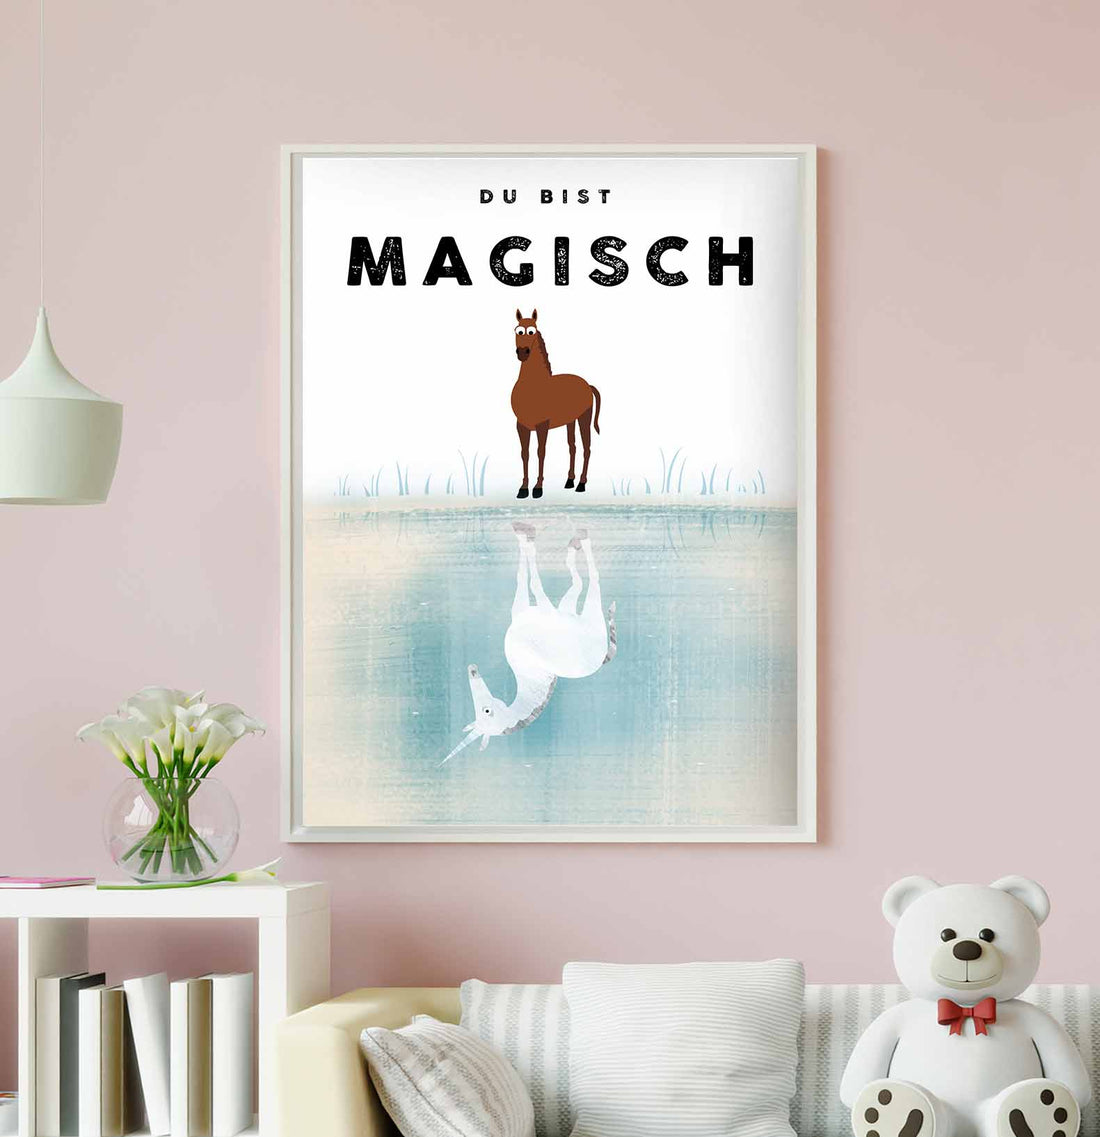    Poster_magisch1